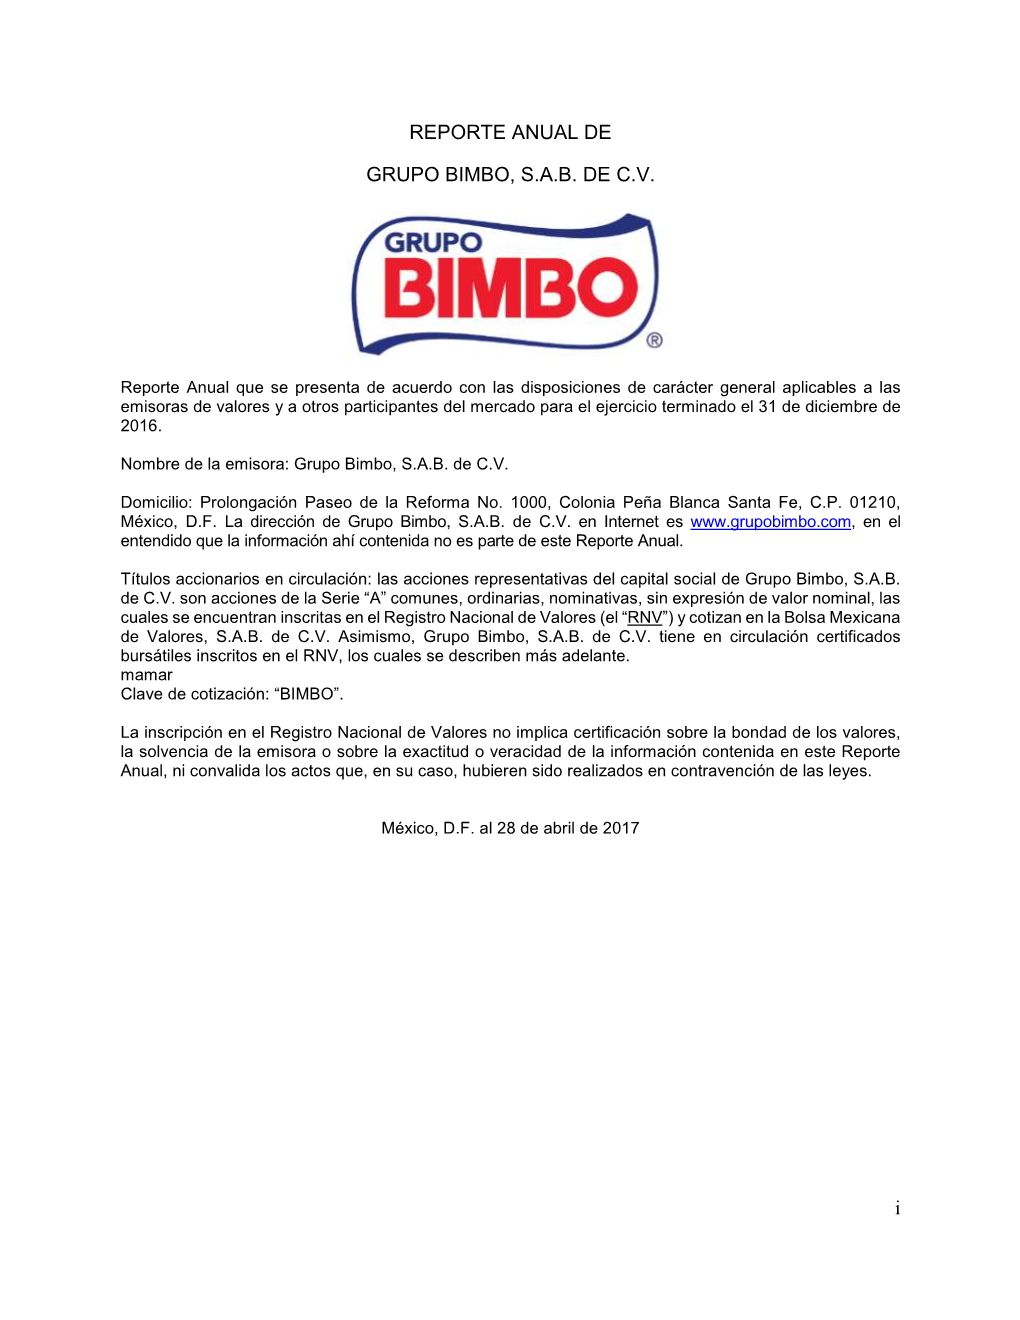 I REPORTE ANUAL DE GRUPO BIMBO, S.A.B. DE C.V